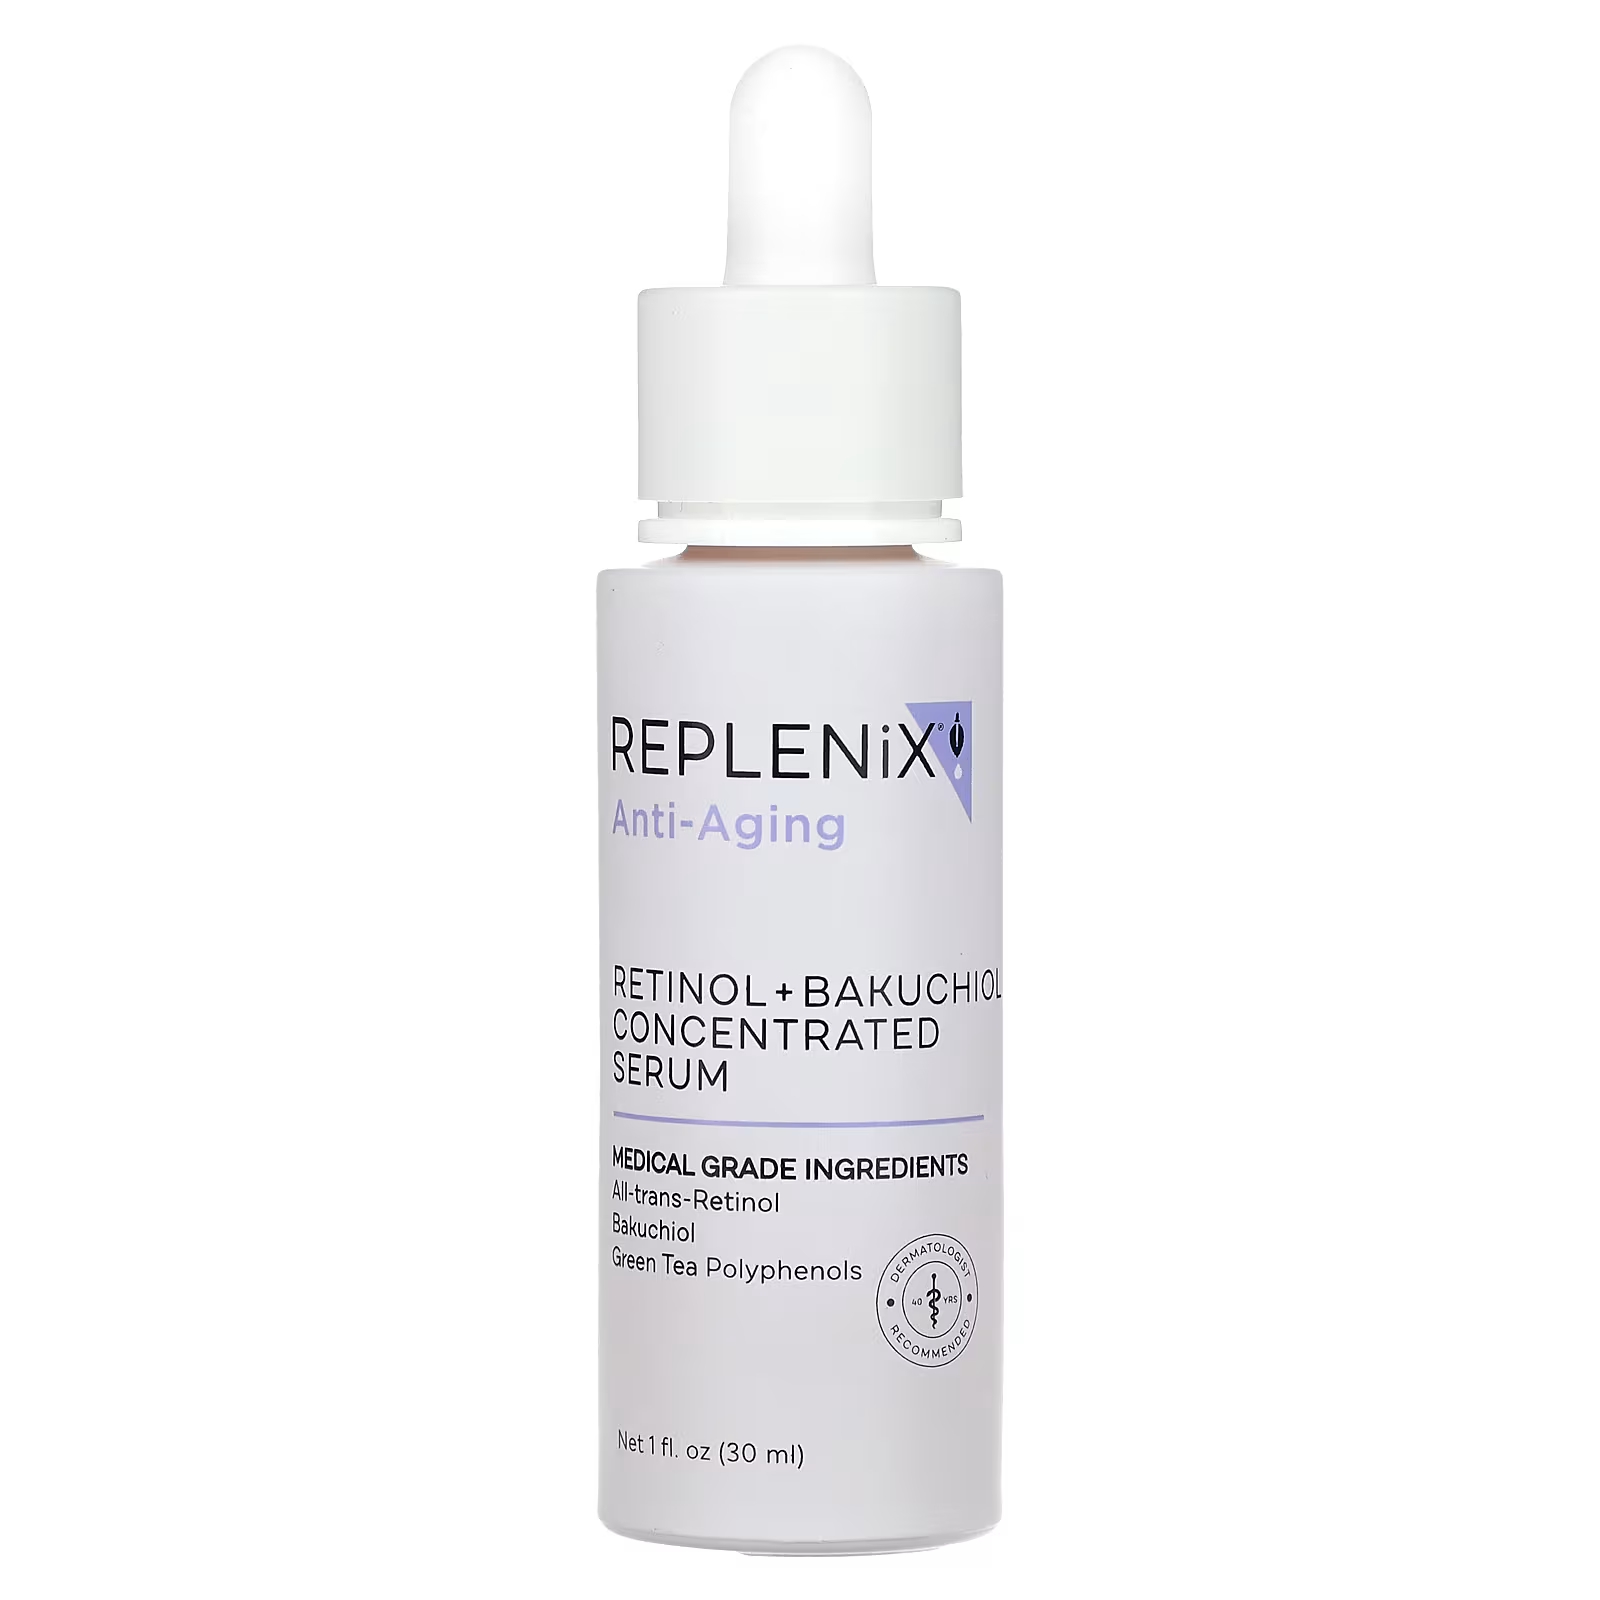 Replenix Антивозрастная концентрированная сыворотка с ретинолом и бакучиолом, 1 жидкая унция (30 мл)